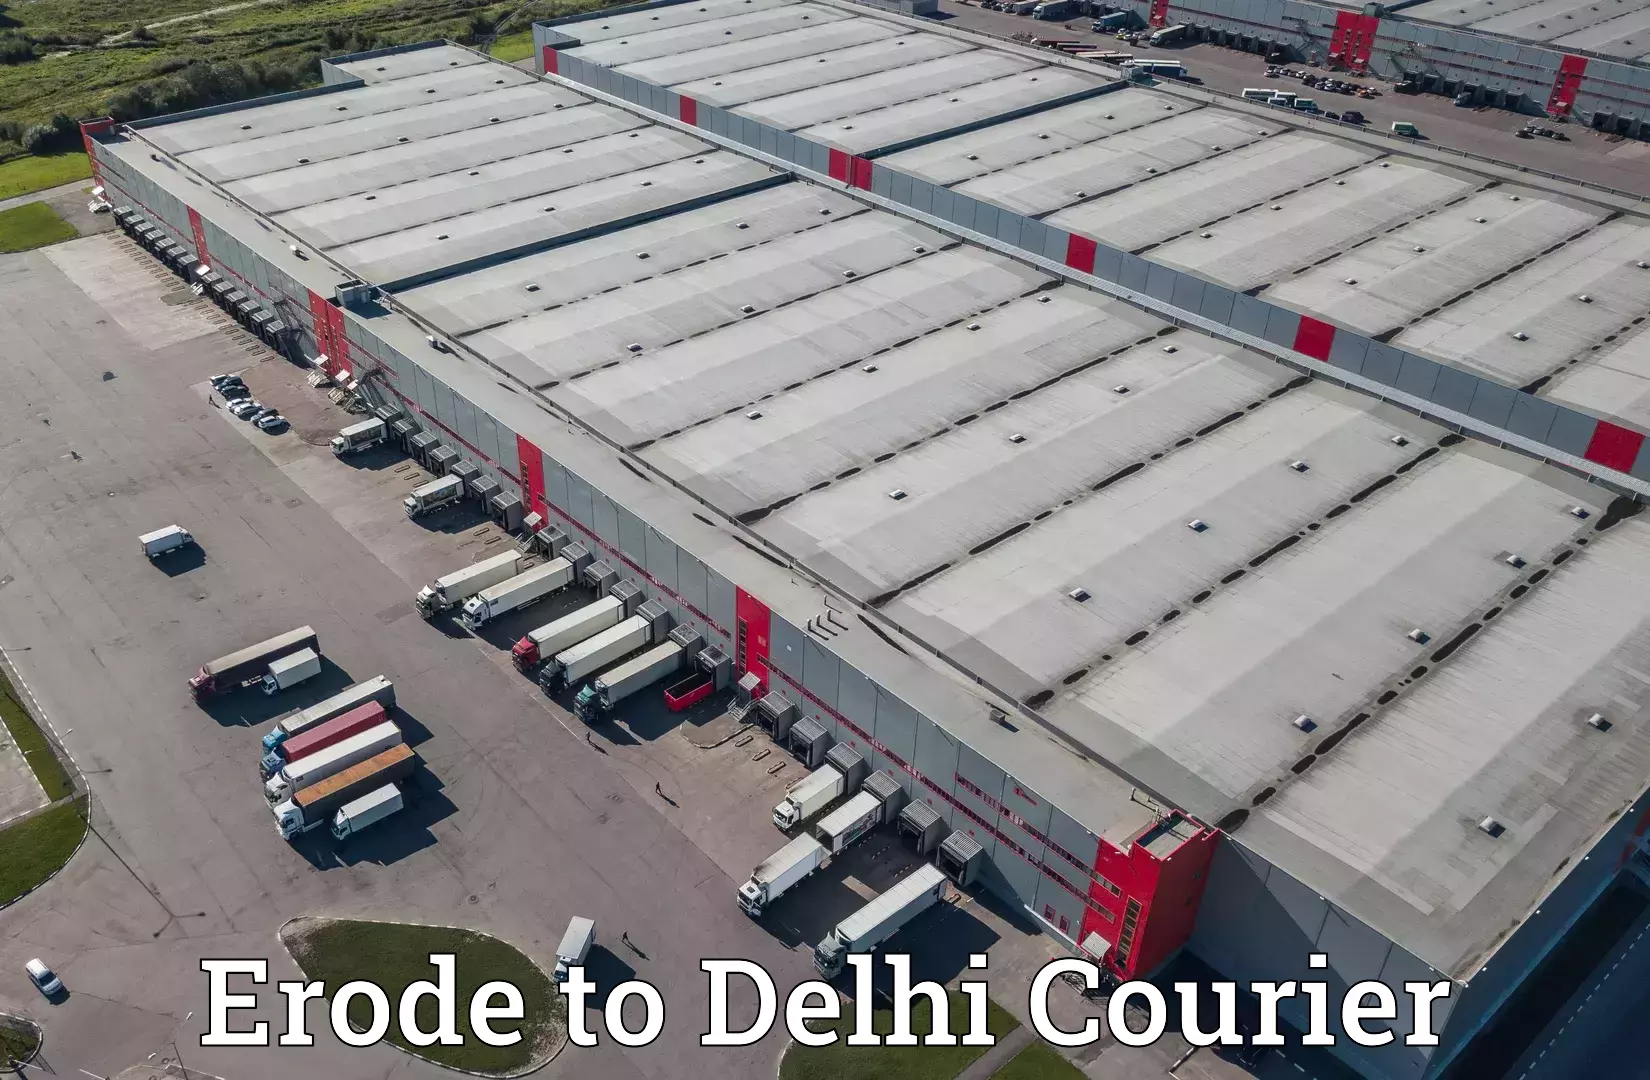 Courier service efficiency Erode to IIT Delhi